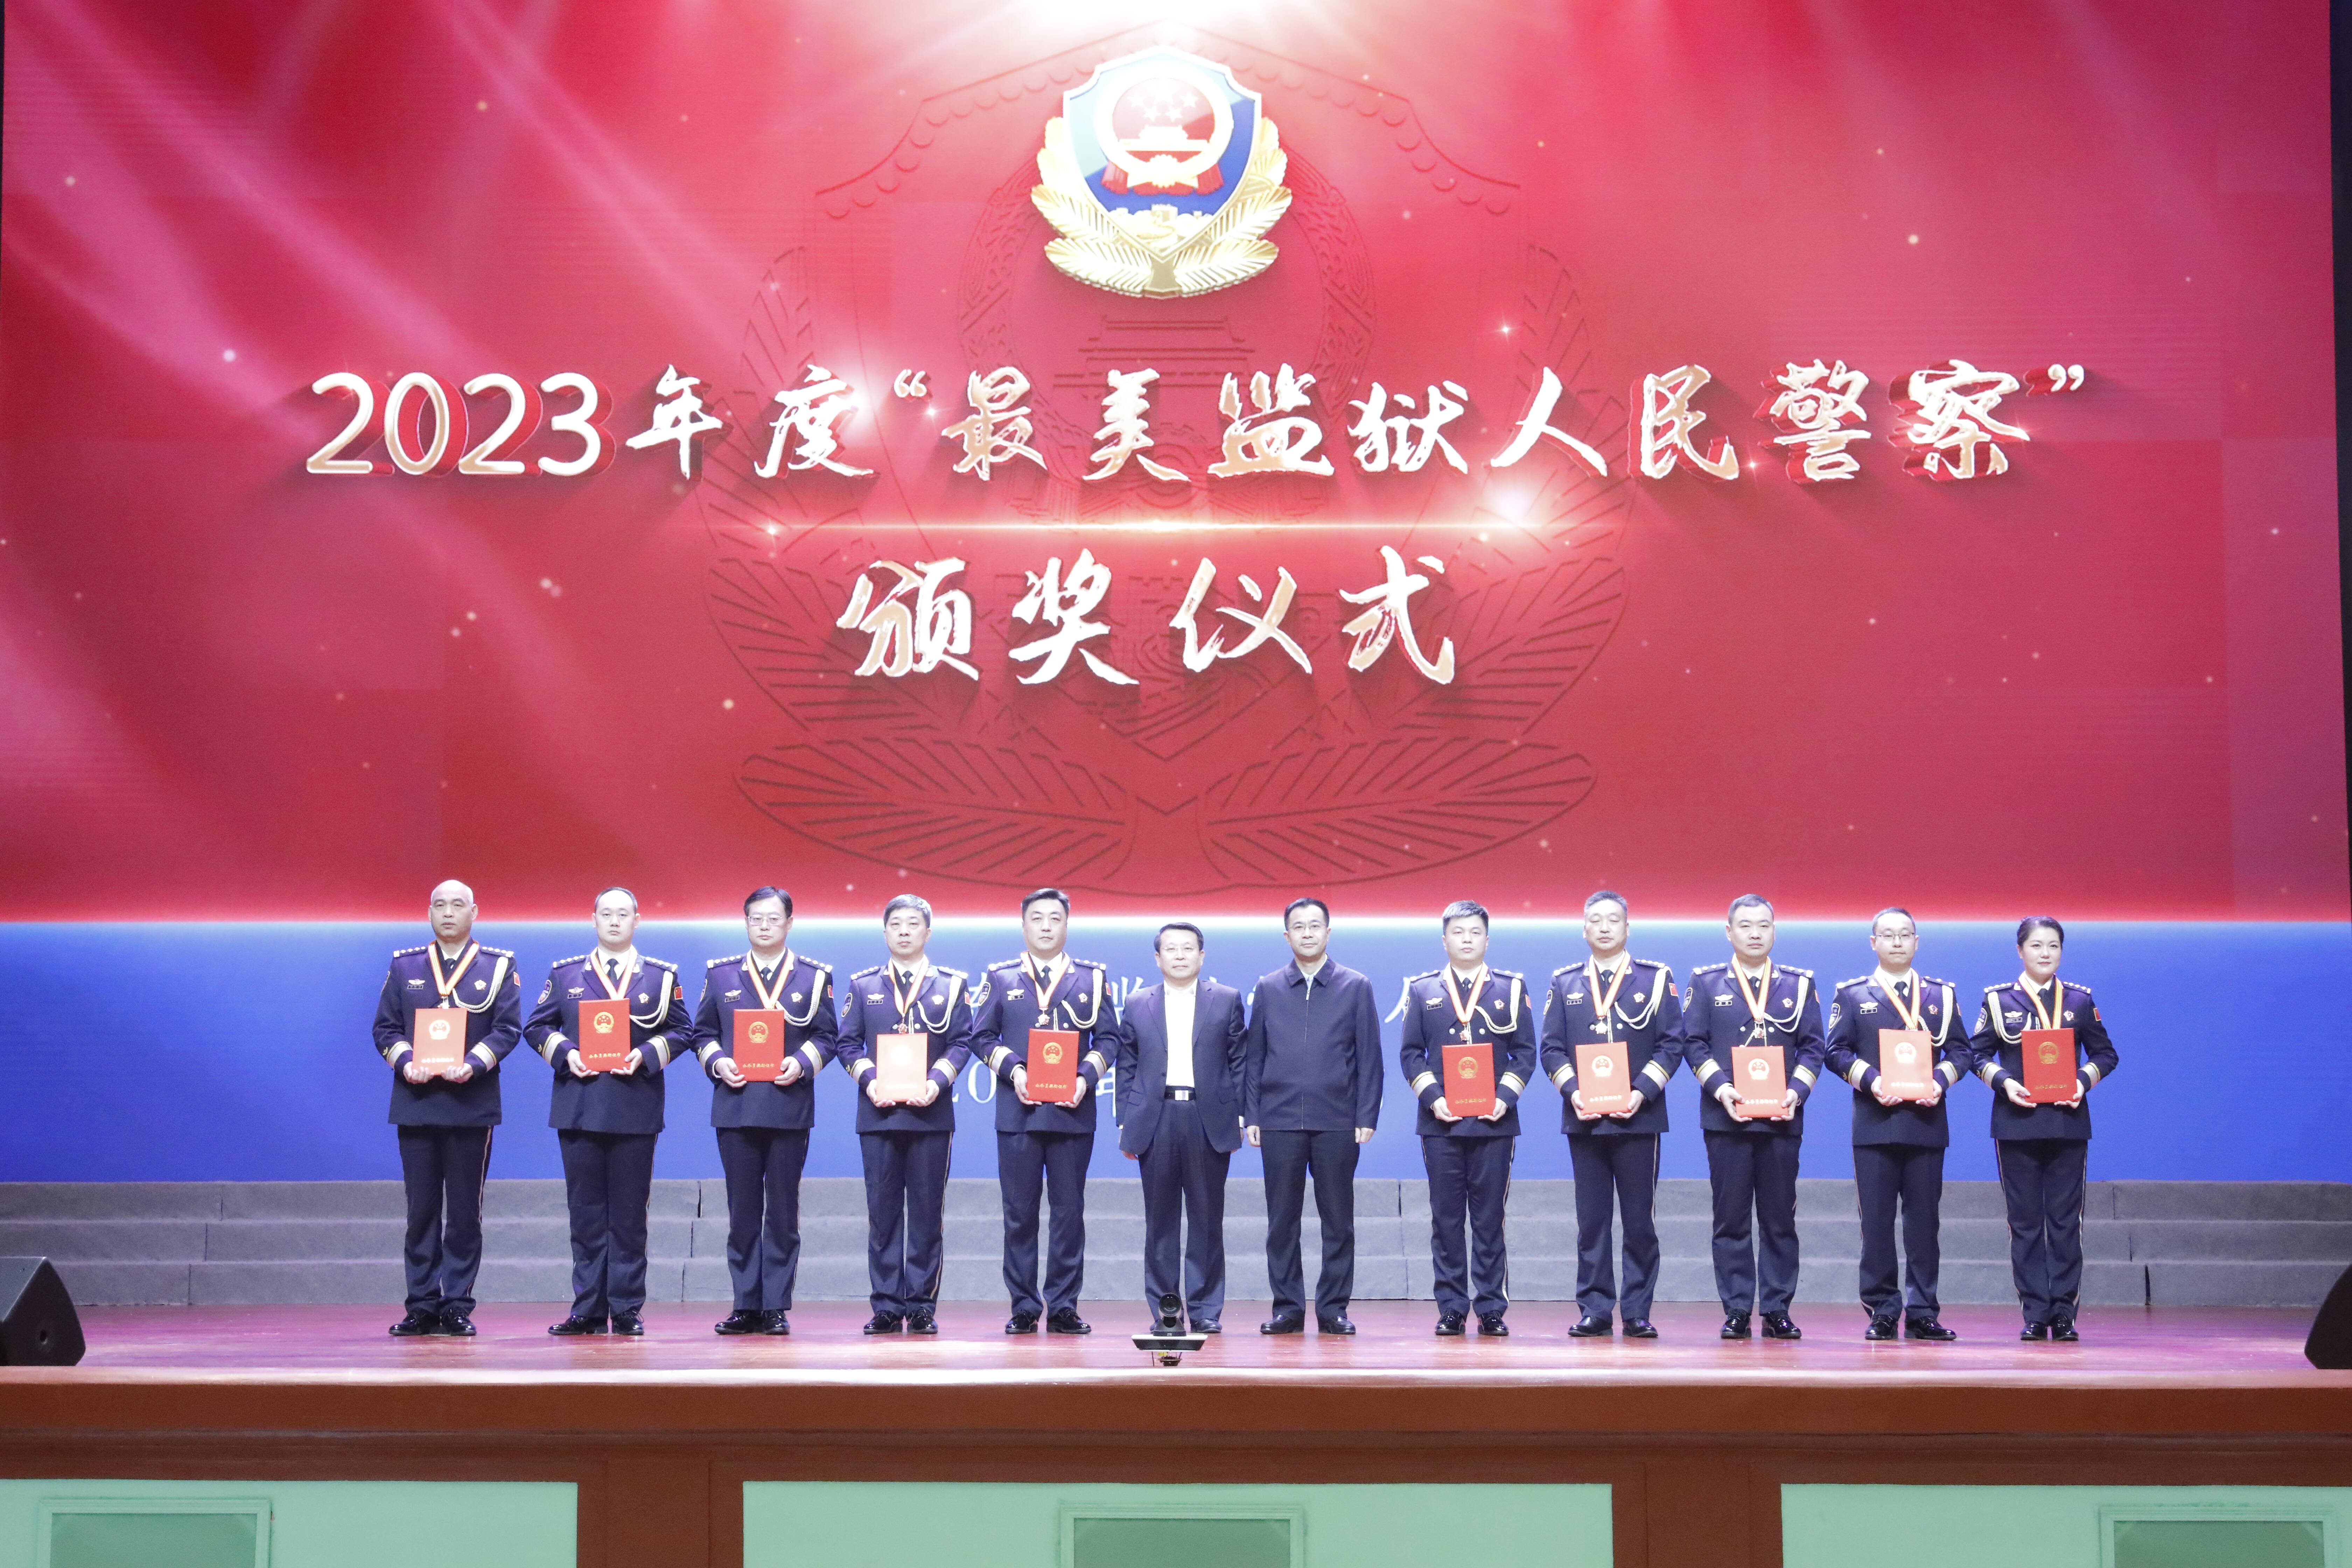 忠诚履行职责 勇于担当作为 山东省监狱管理局举行庆祝中国人民警察节活动